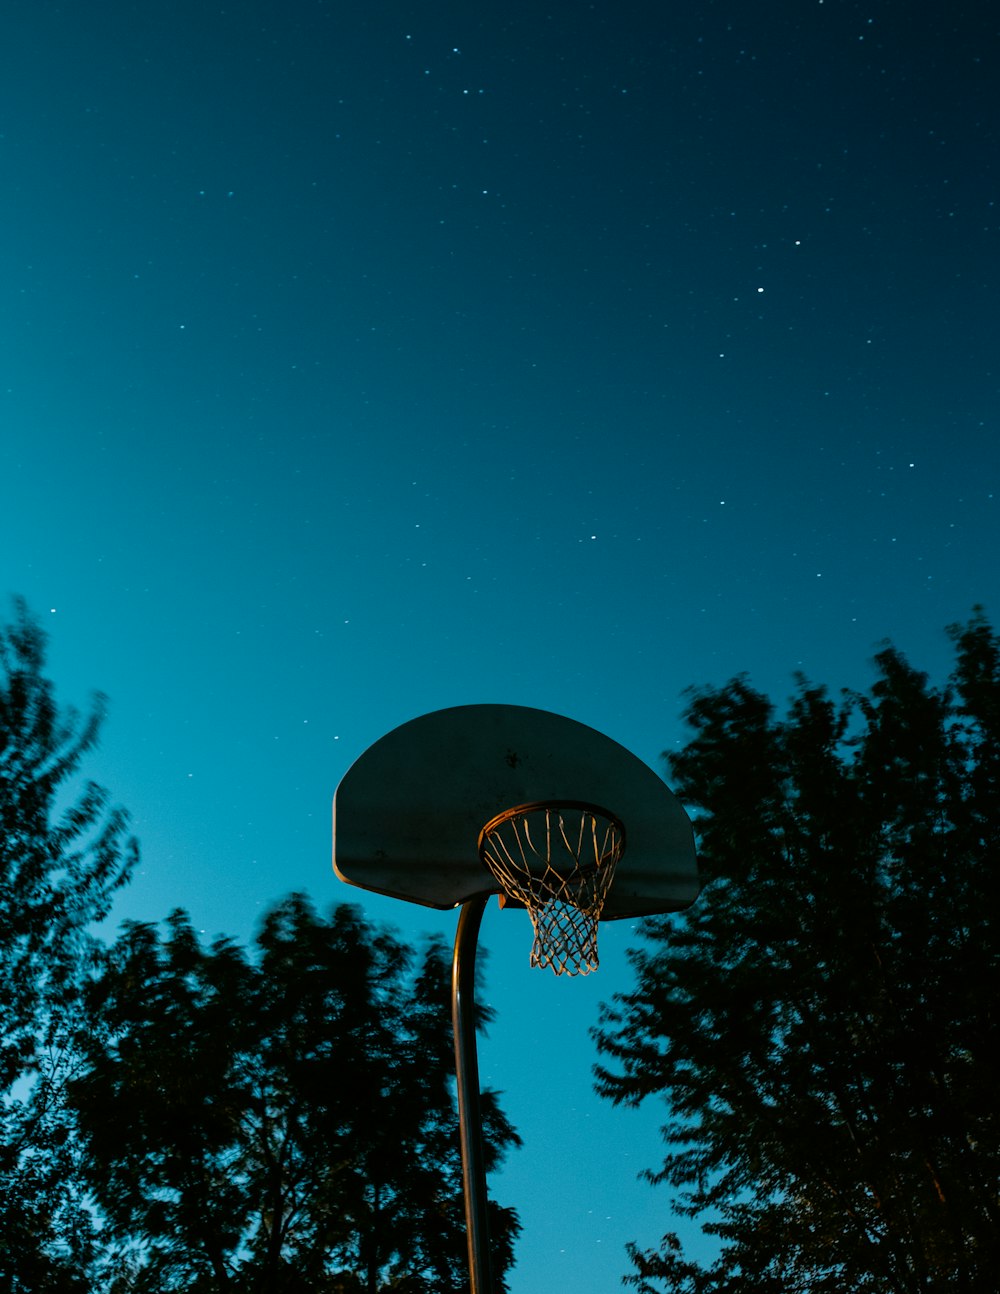 canasta de baloncesto marrón y blanca cerca de los árboles